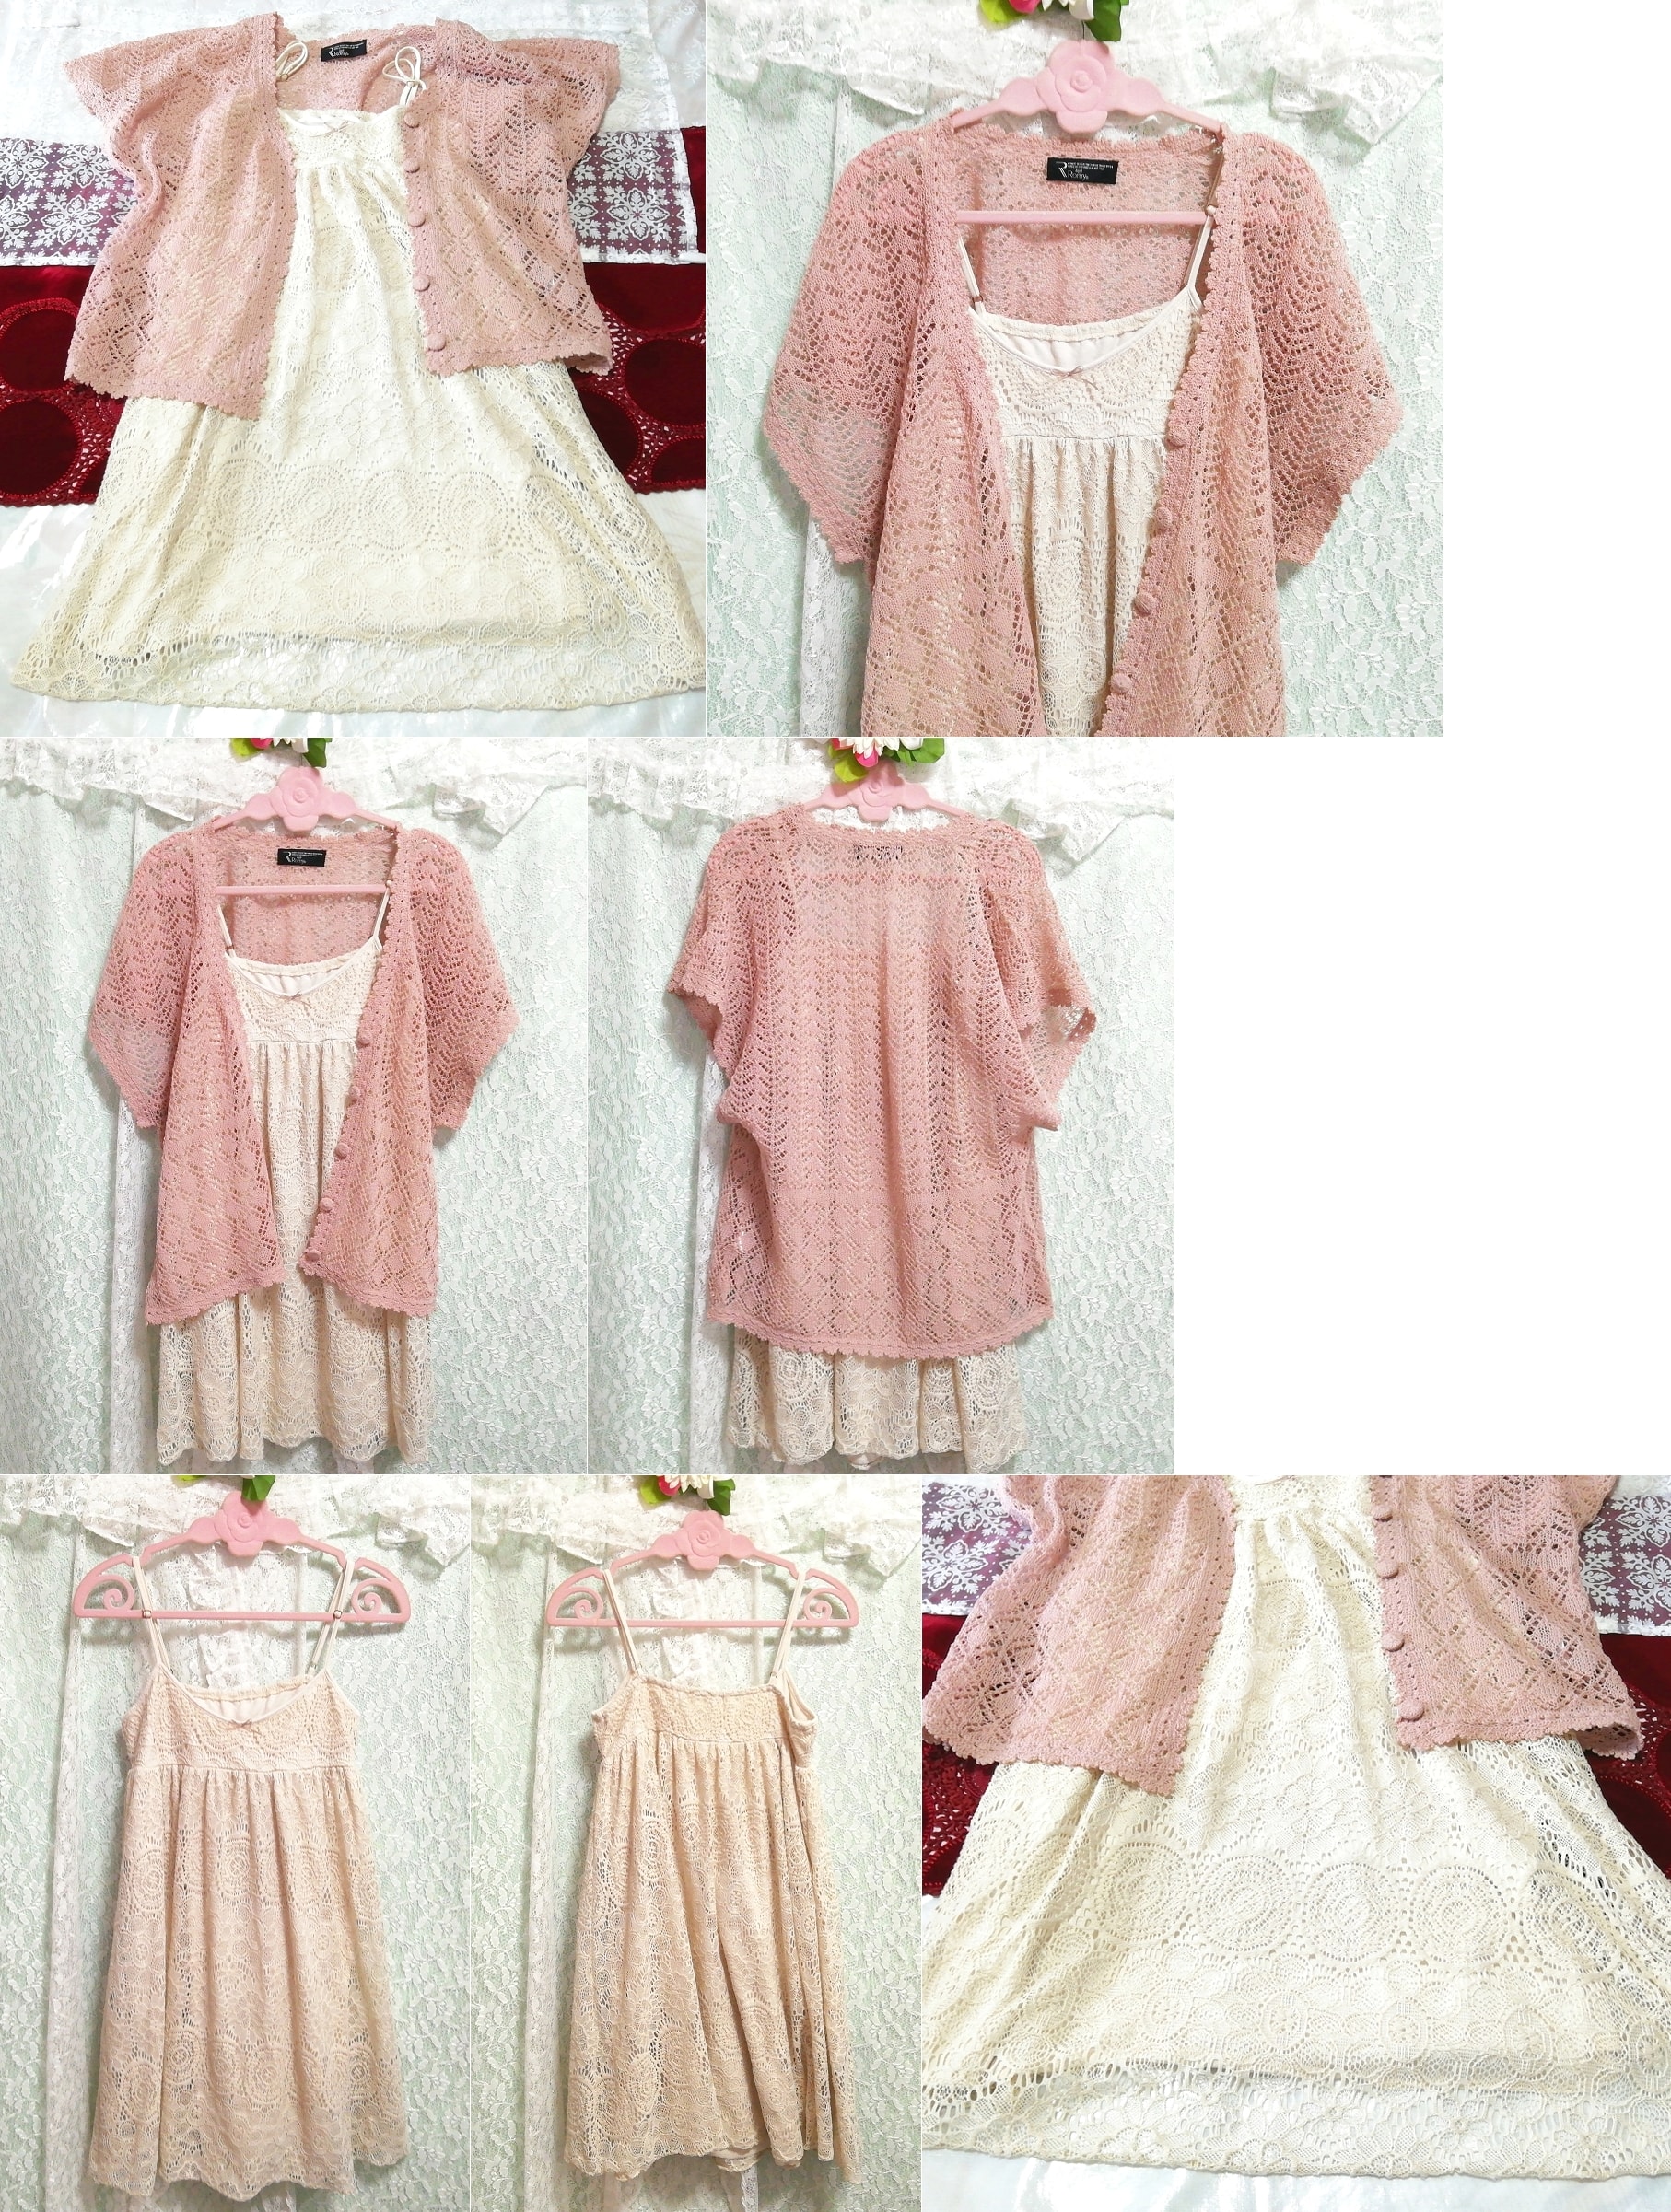 핑크 니트 레이스 겉옷 가운 네글리제 나이트가운 캐미솔 베이비돌 드레스 2P, 패션, 숙녀 패션, 잠옷, 잠옷